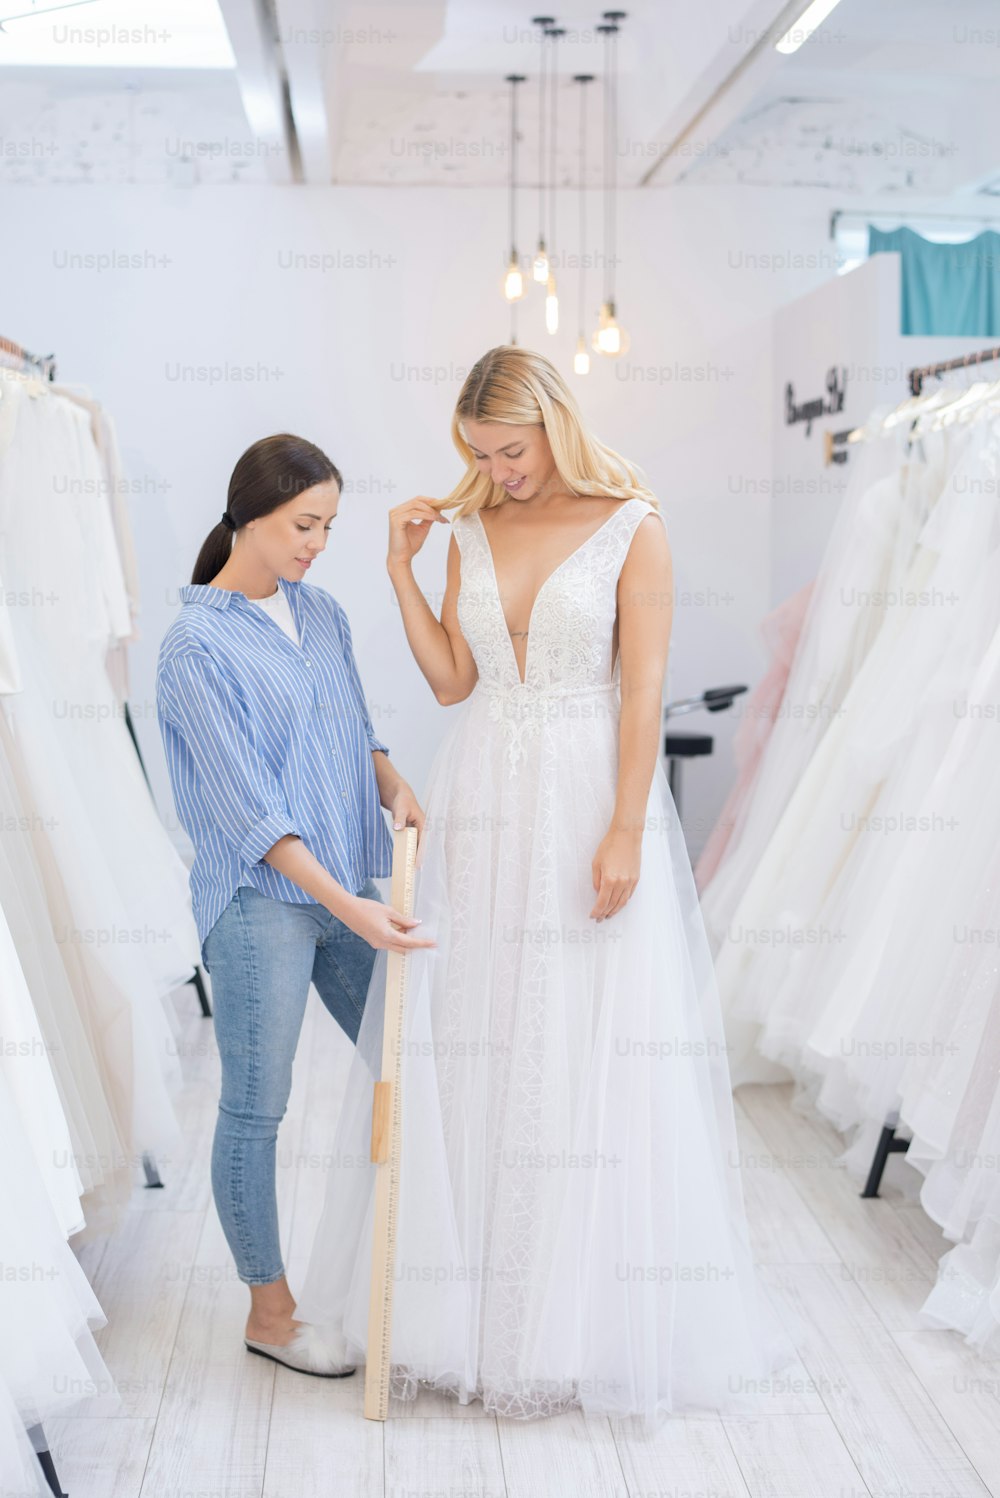 Consultor de vestidos de novia usando regla de madera mientras mide la longitud de la falda de novia en la tienda